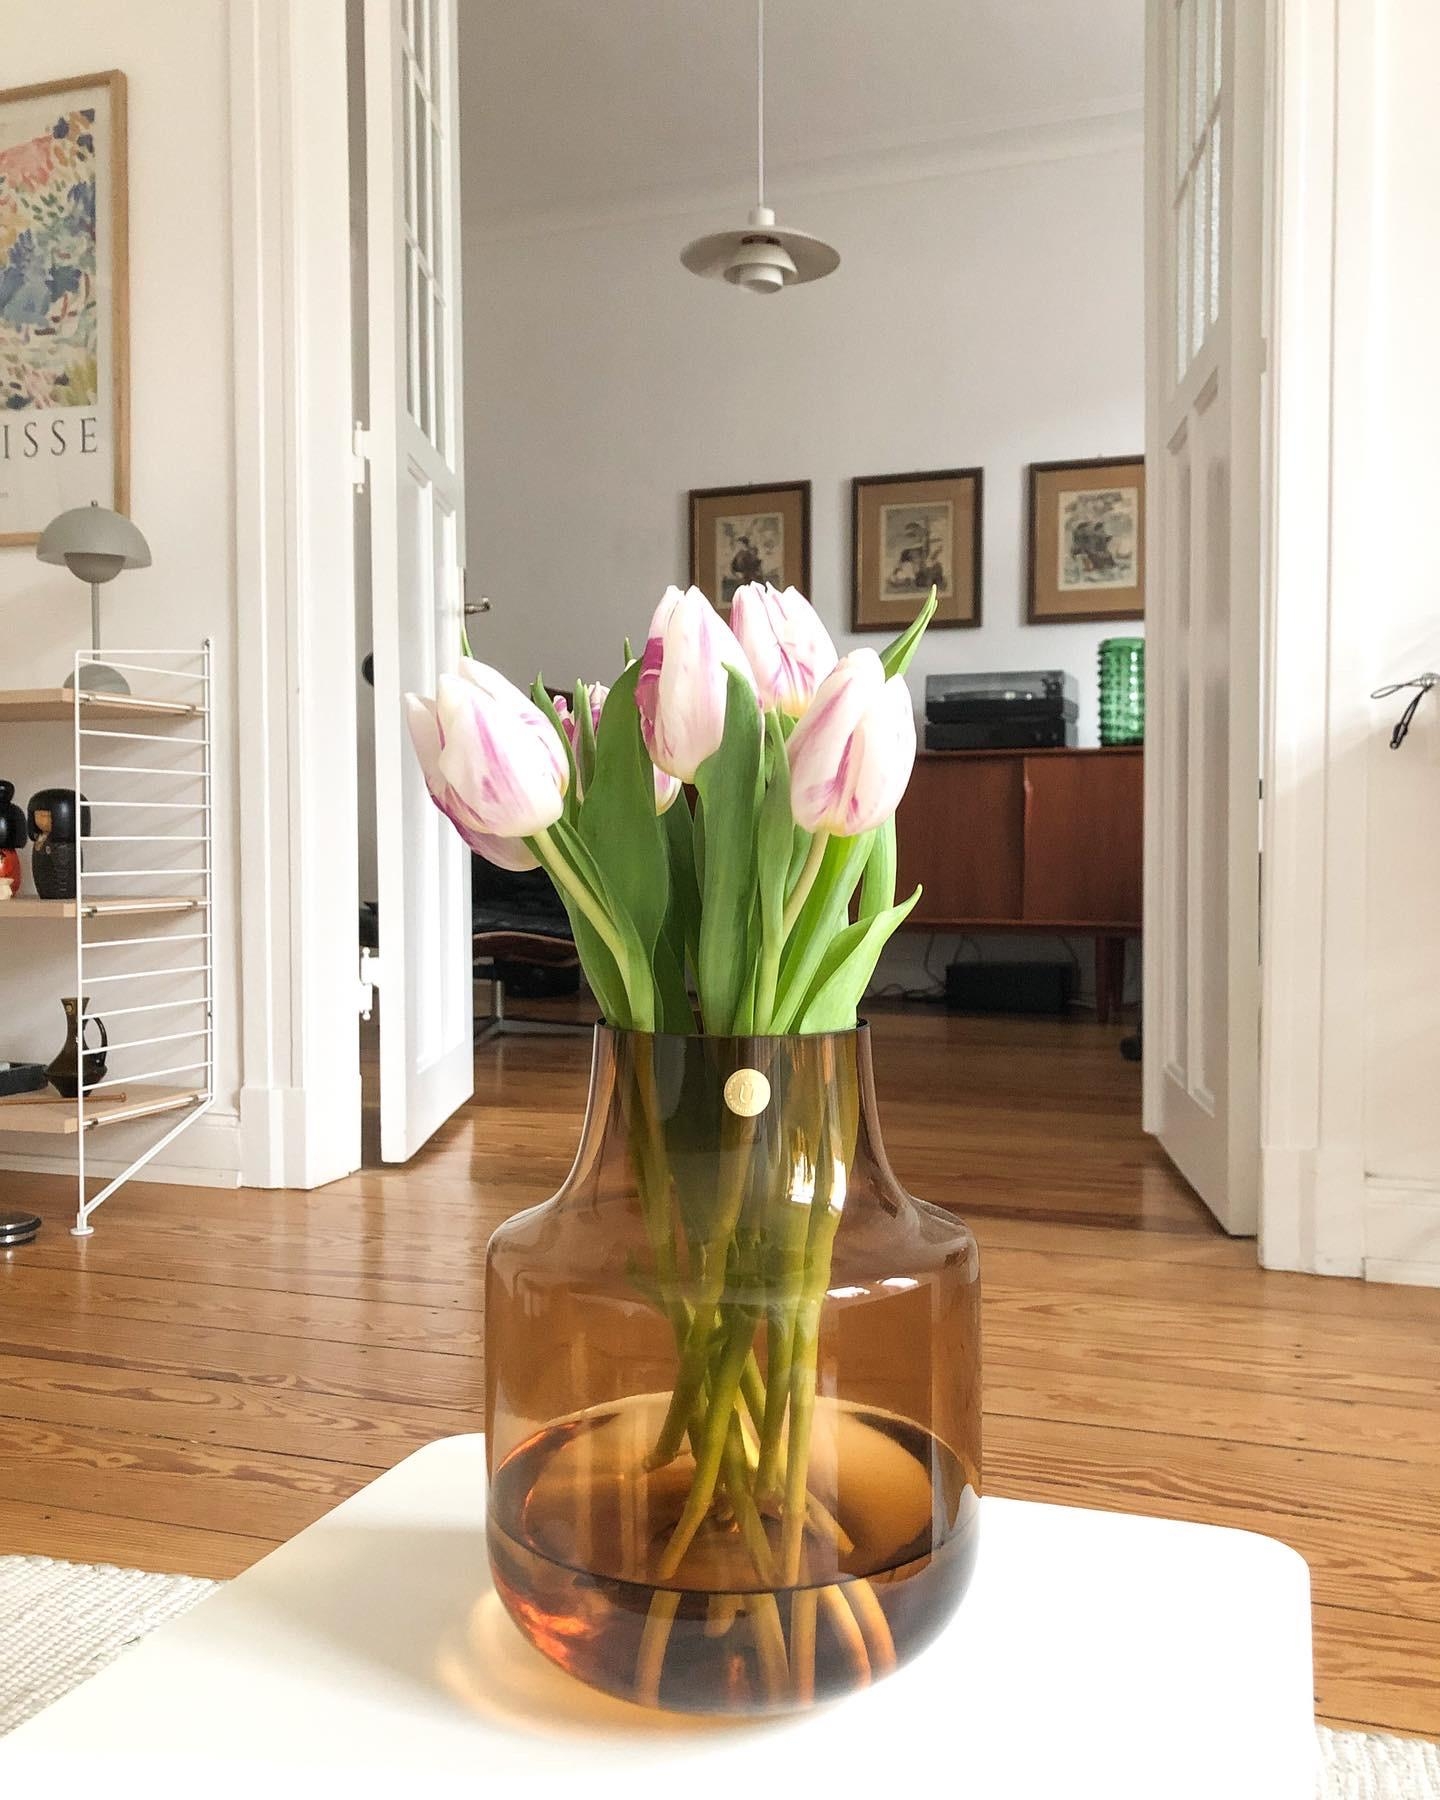 #freshflowerfriday #tulpen #frühlingserwachen #wohnzimmer #altbauliebe #couchliebt #vasebmittwoch